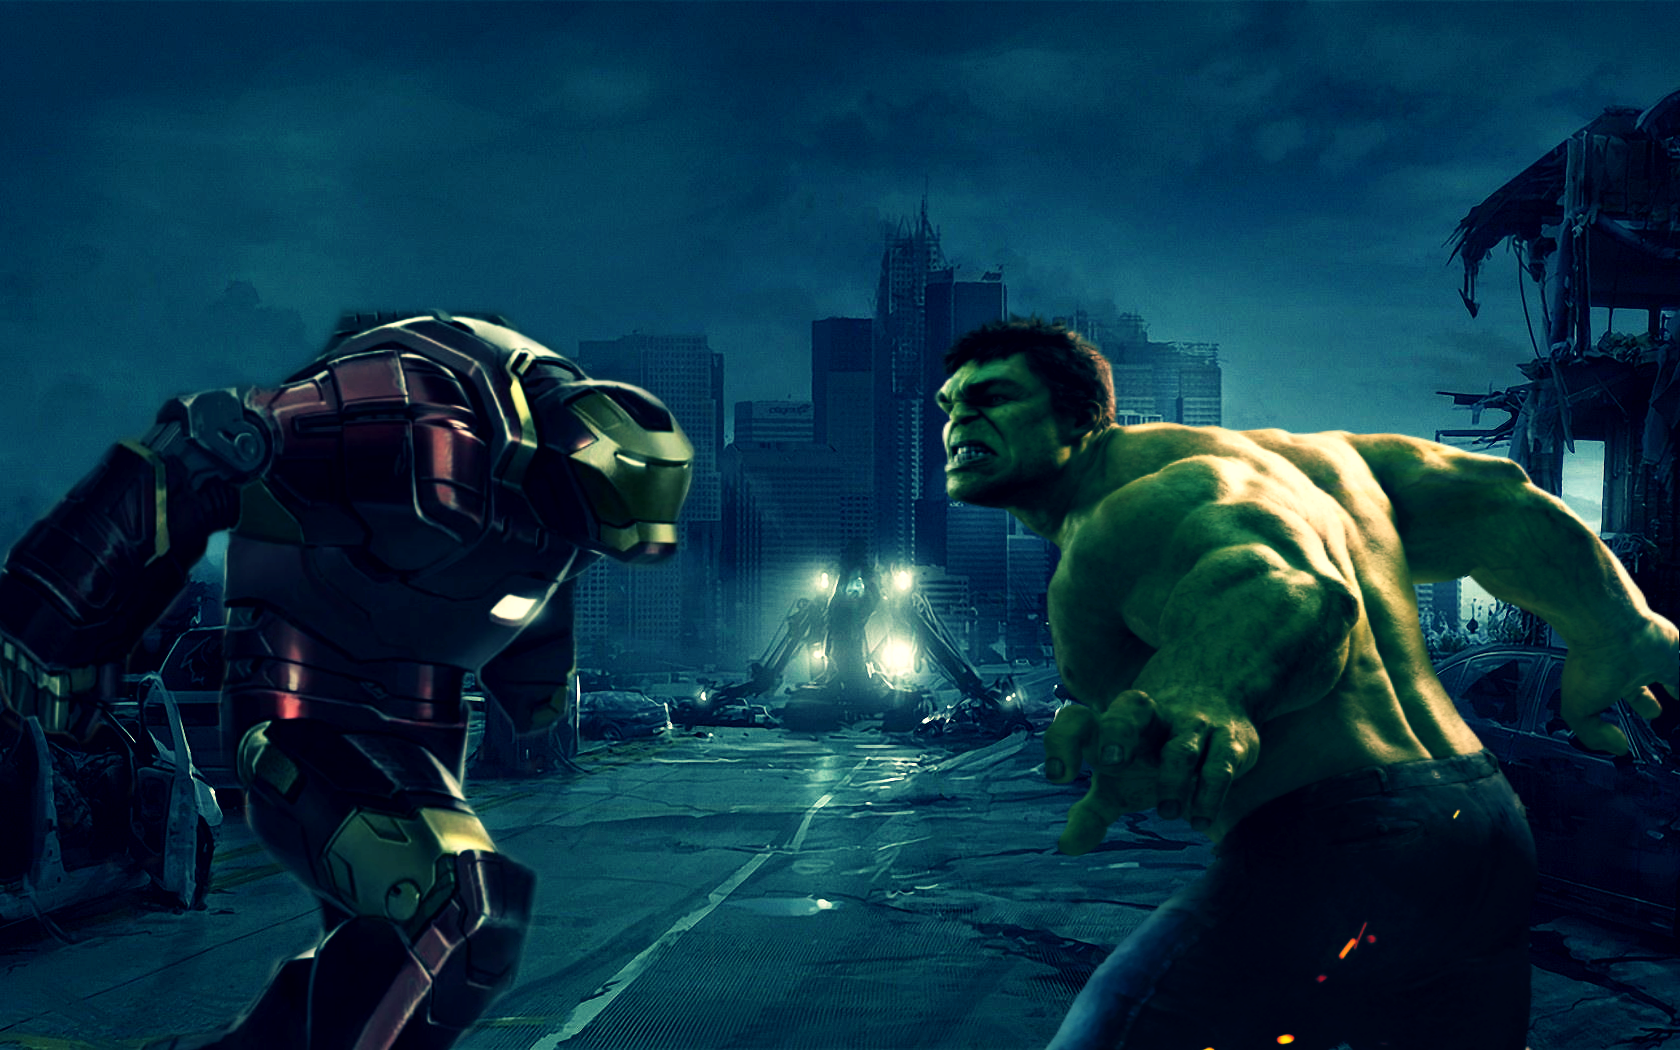 Marvel Civil War Hulkbuster Vs Hulk By Thanoseditions